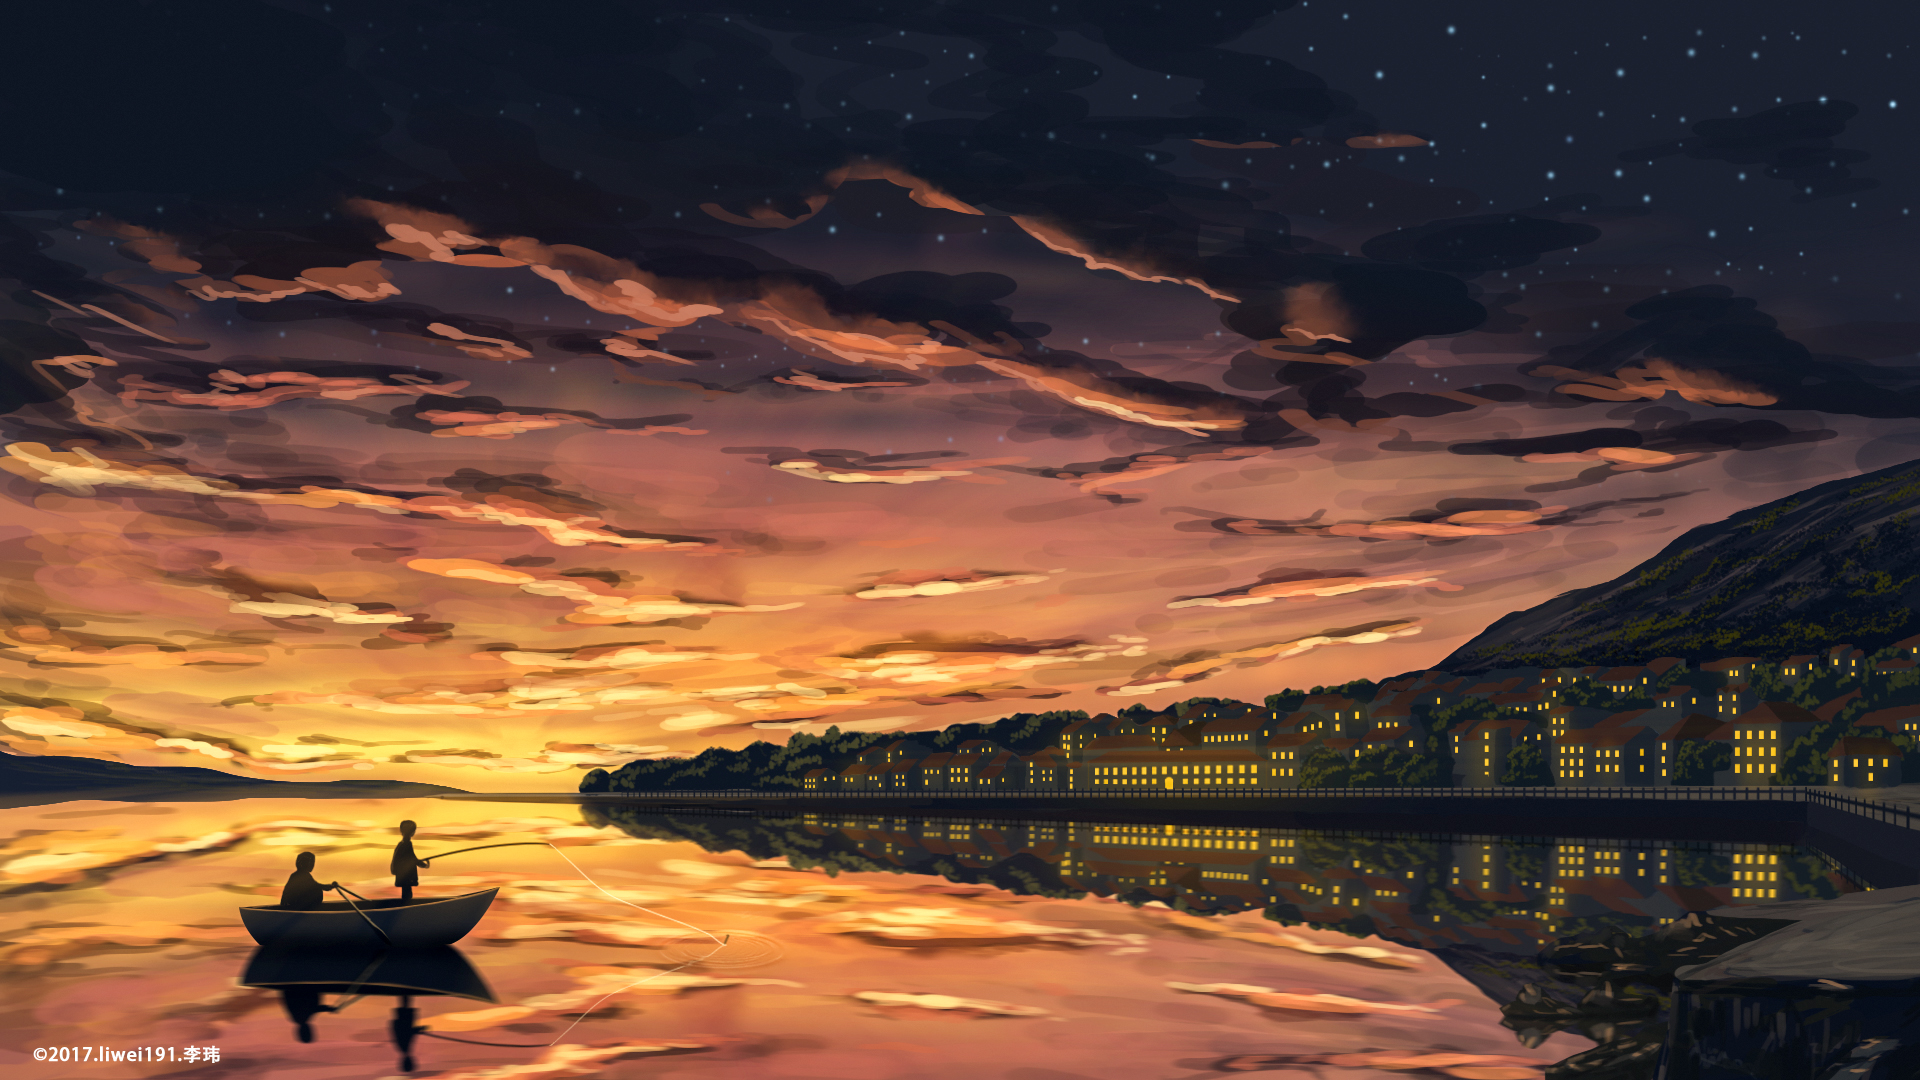 City Boat Sunset Starry Sky 1920x1080